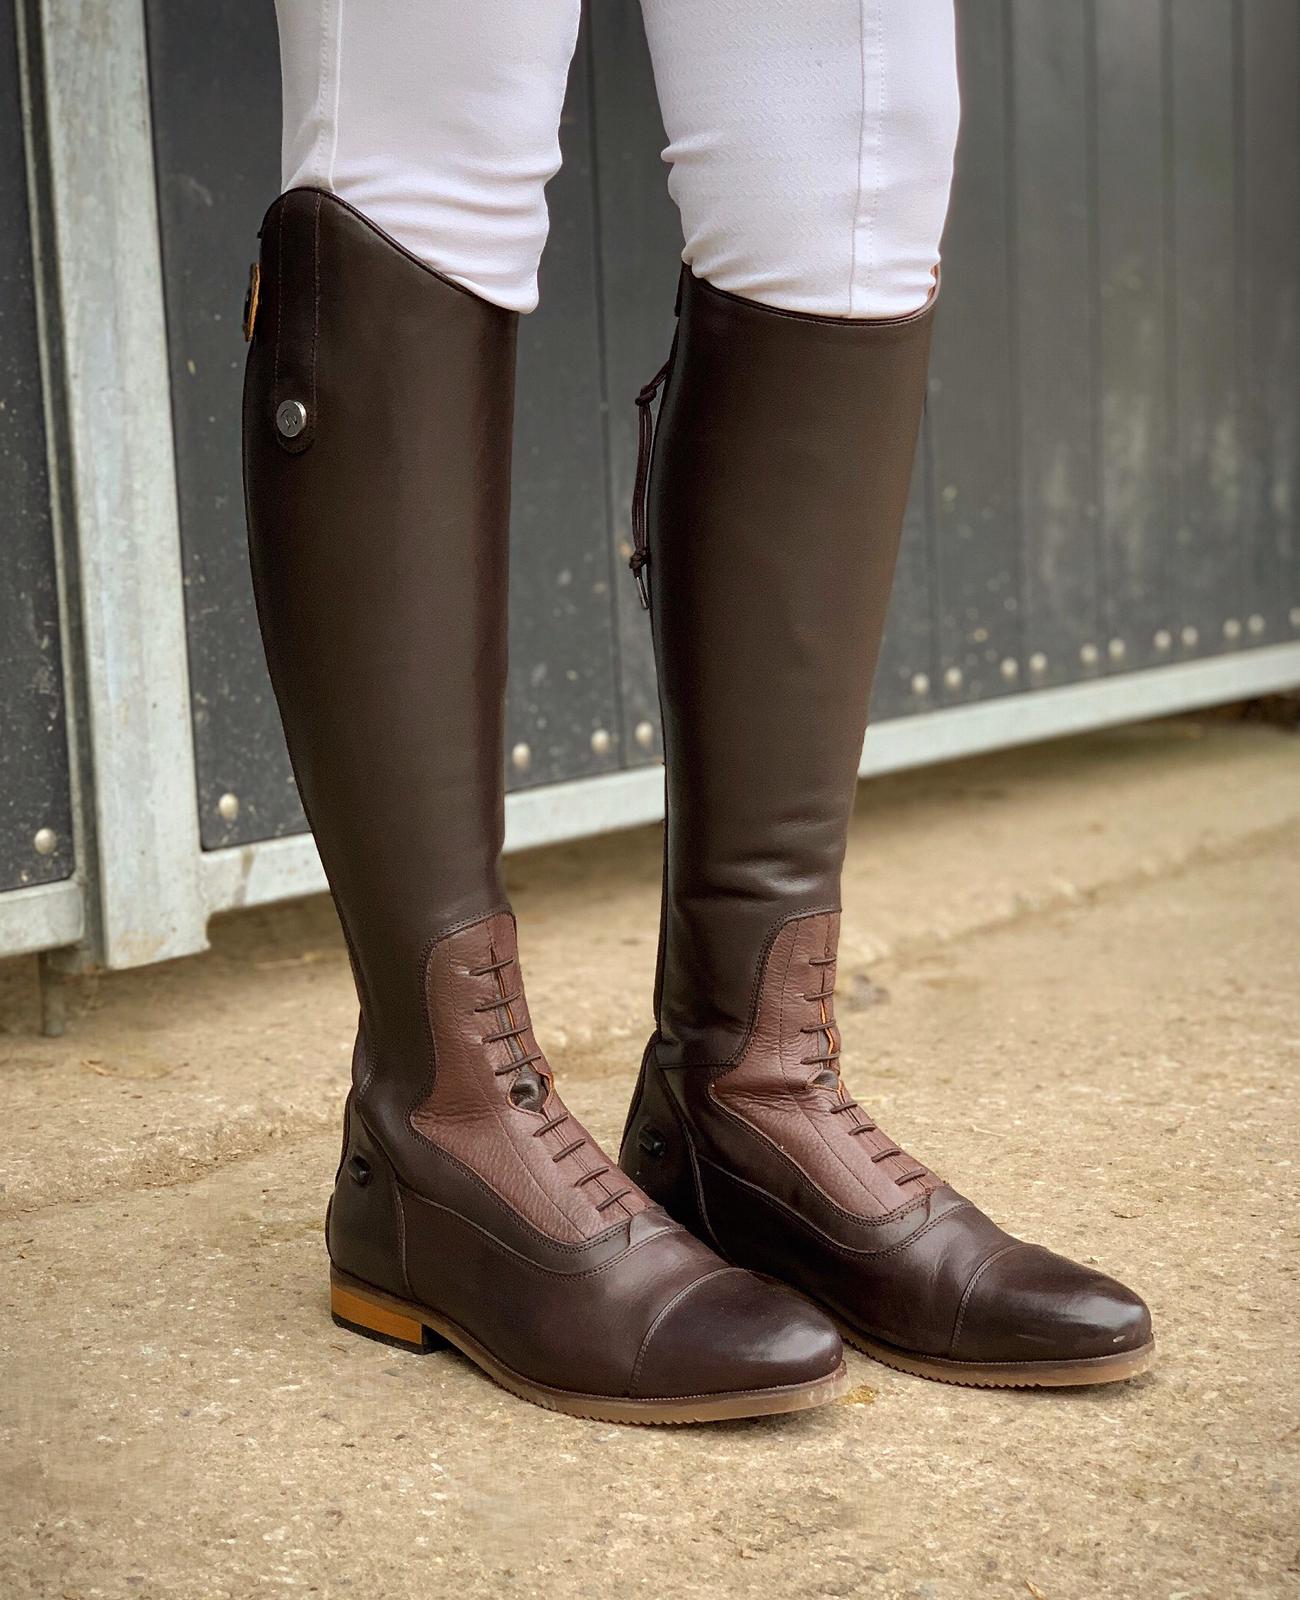 equestrian boots